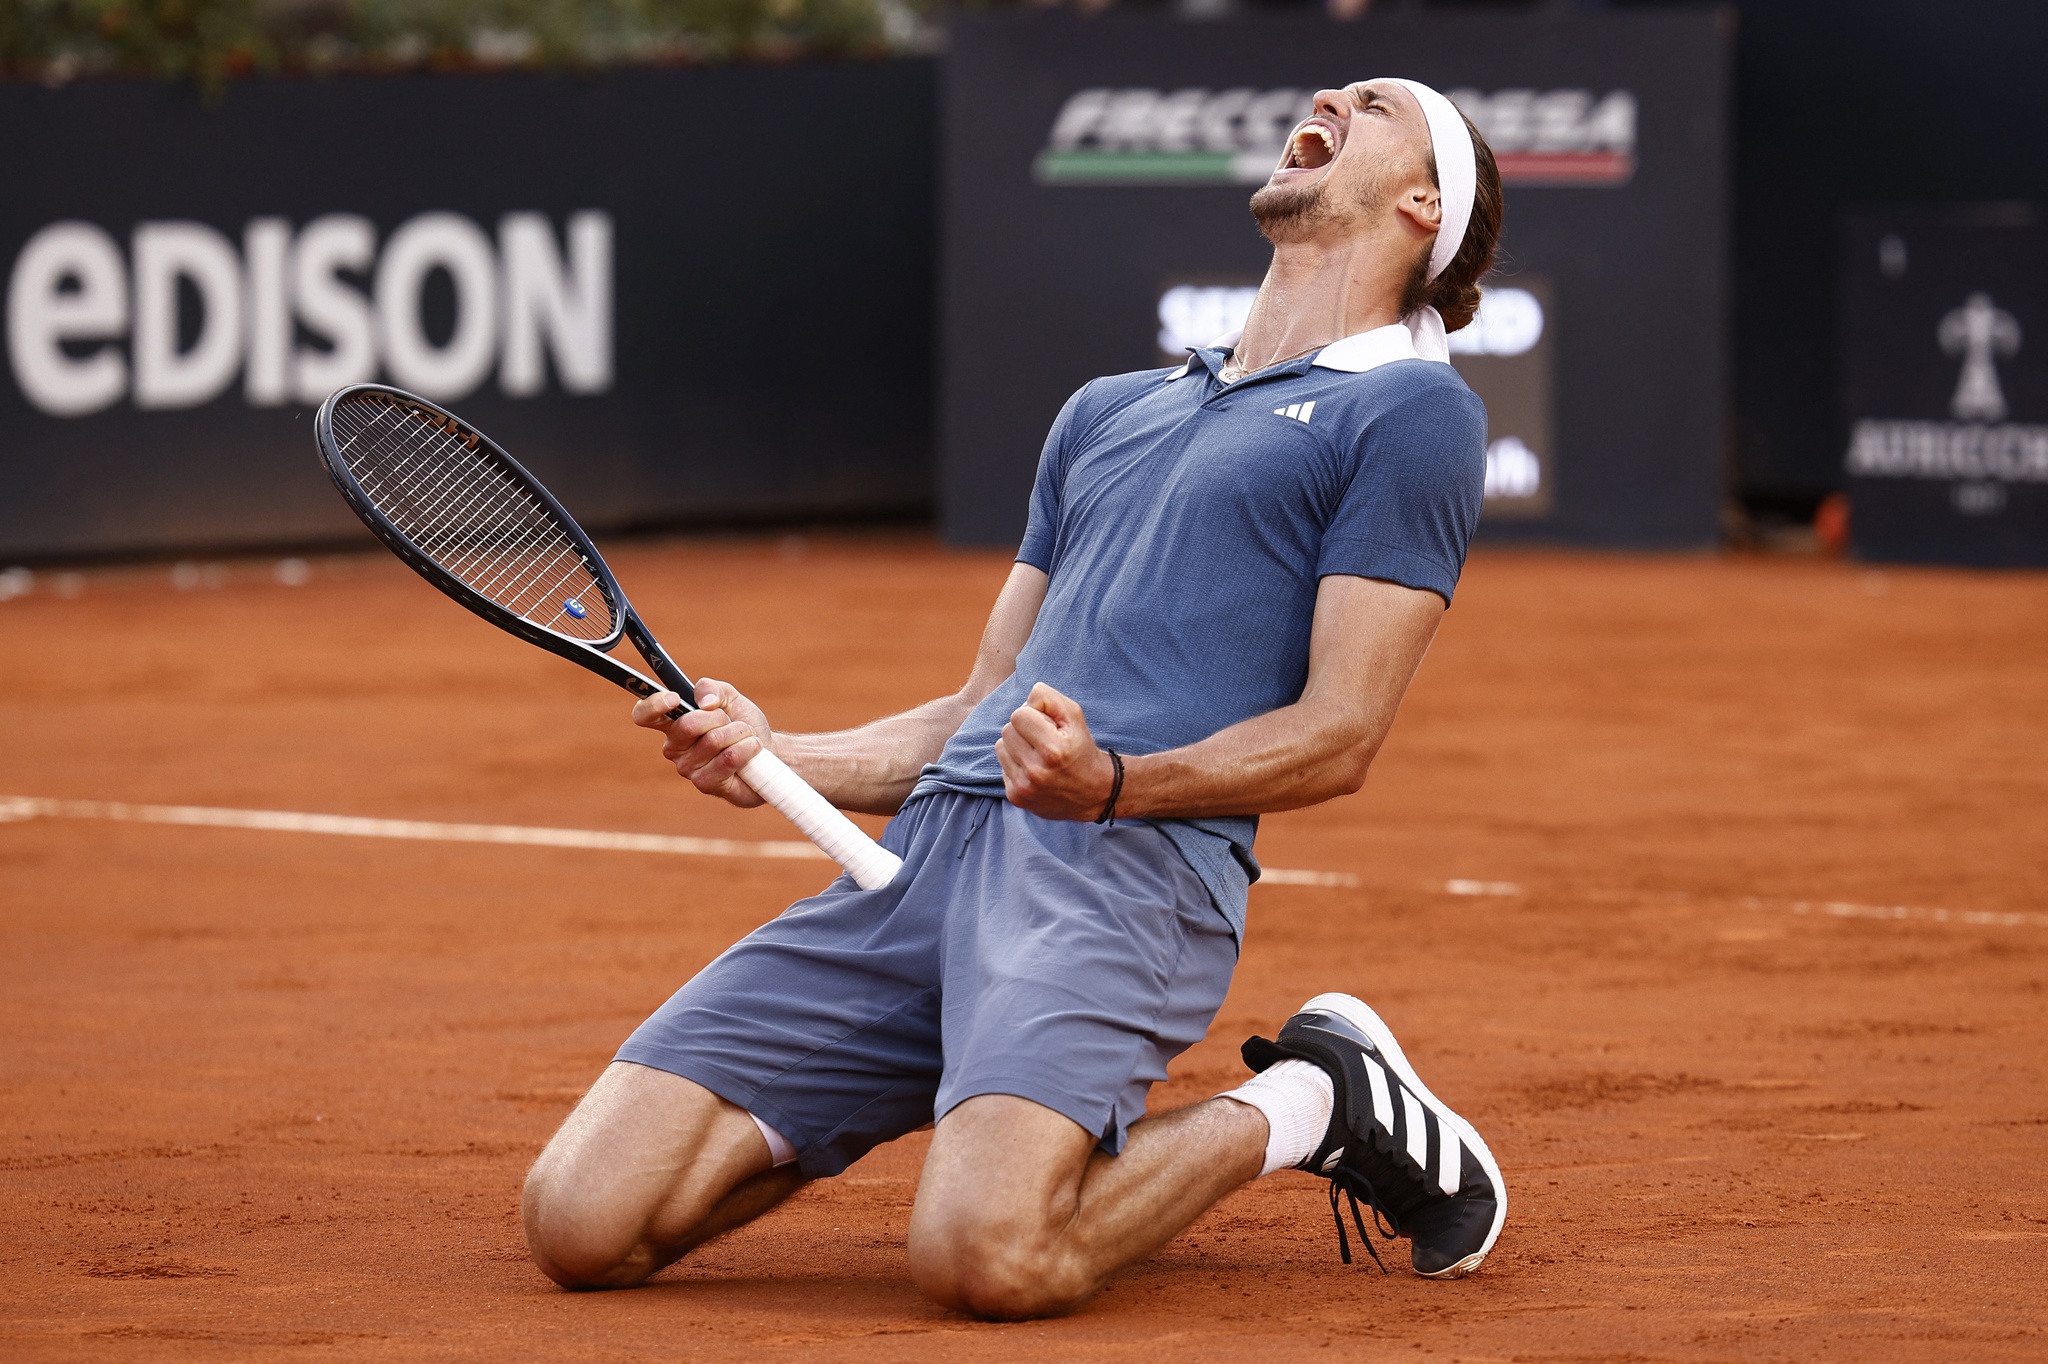 Le triomphe à Rome place Zverev parmi les favoris à Paris |  Tennis